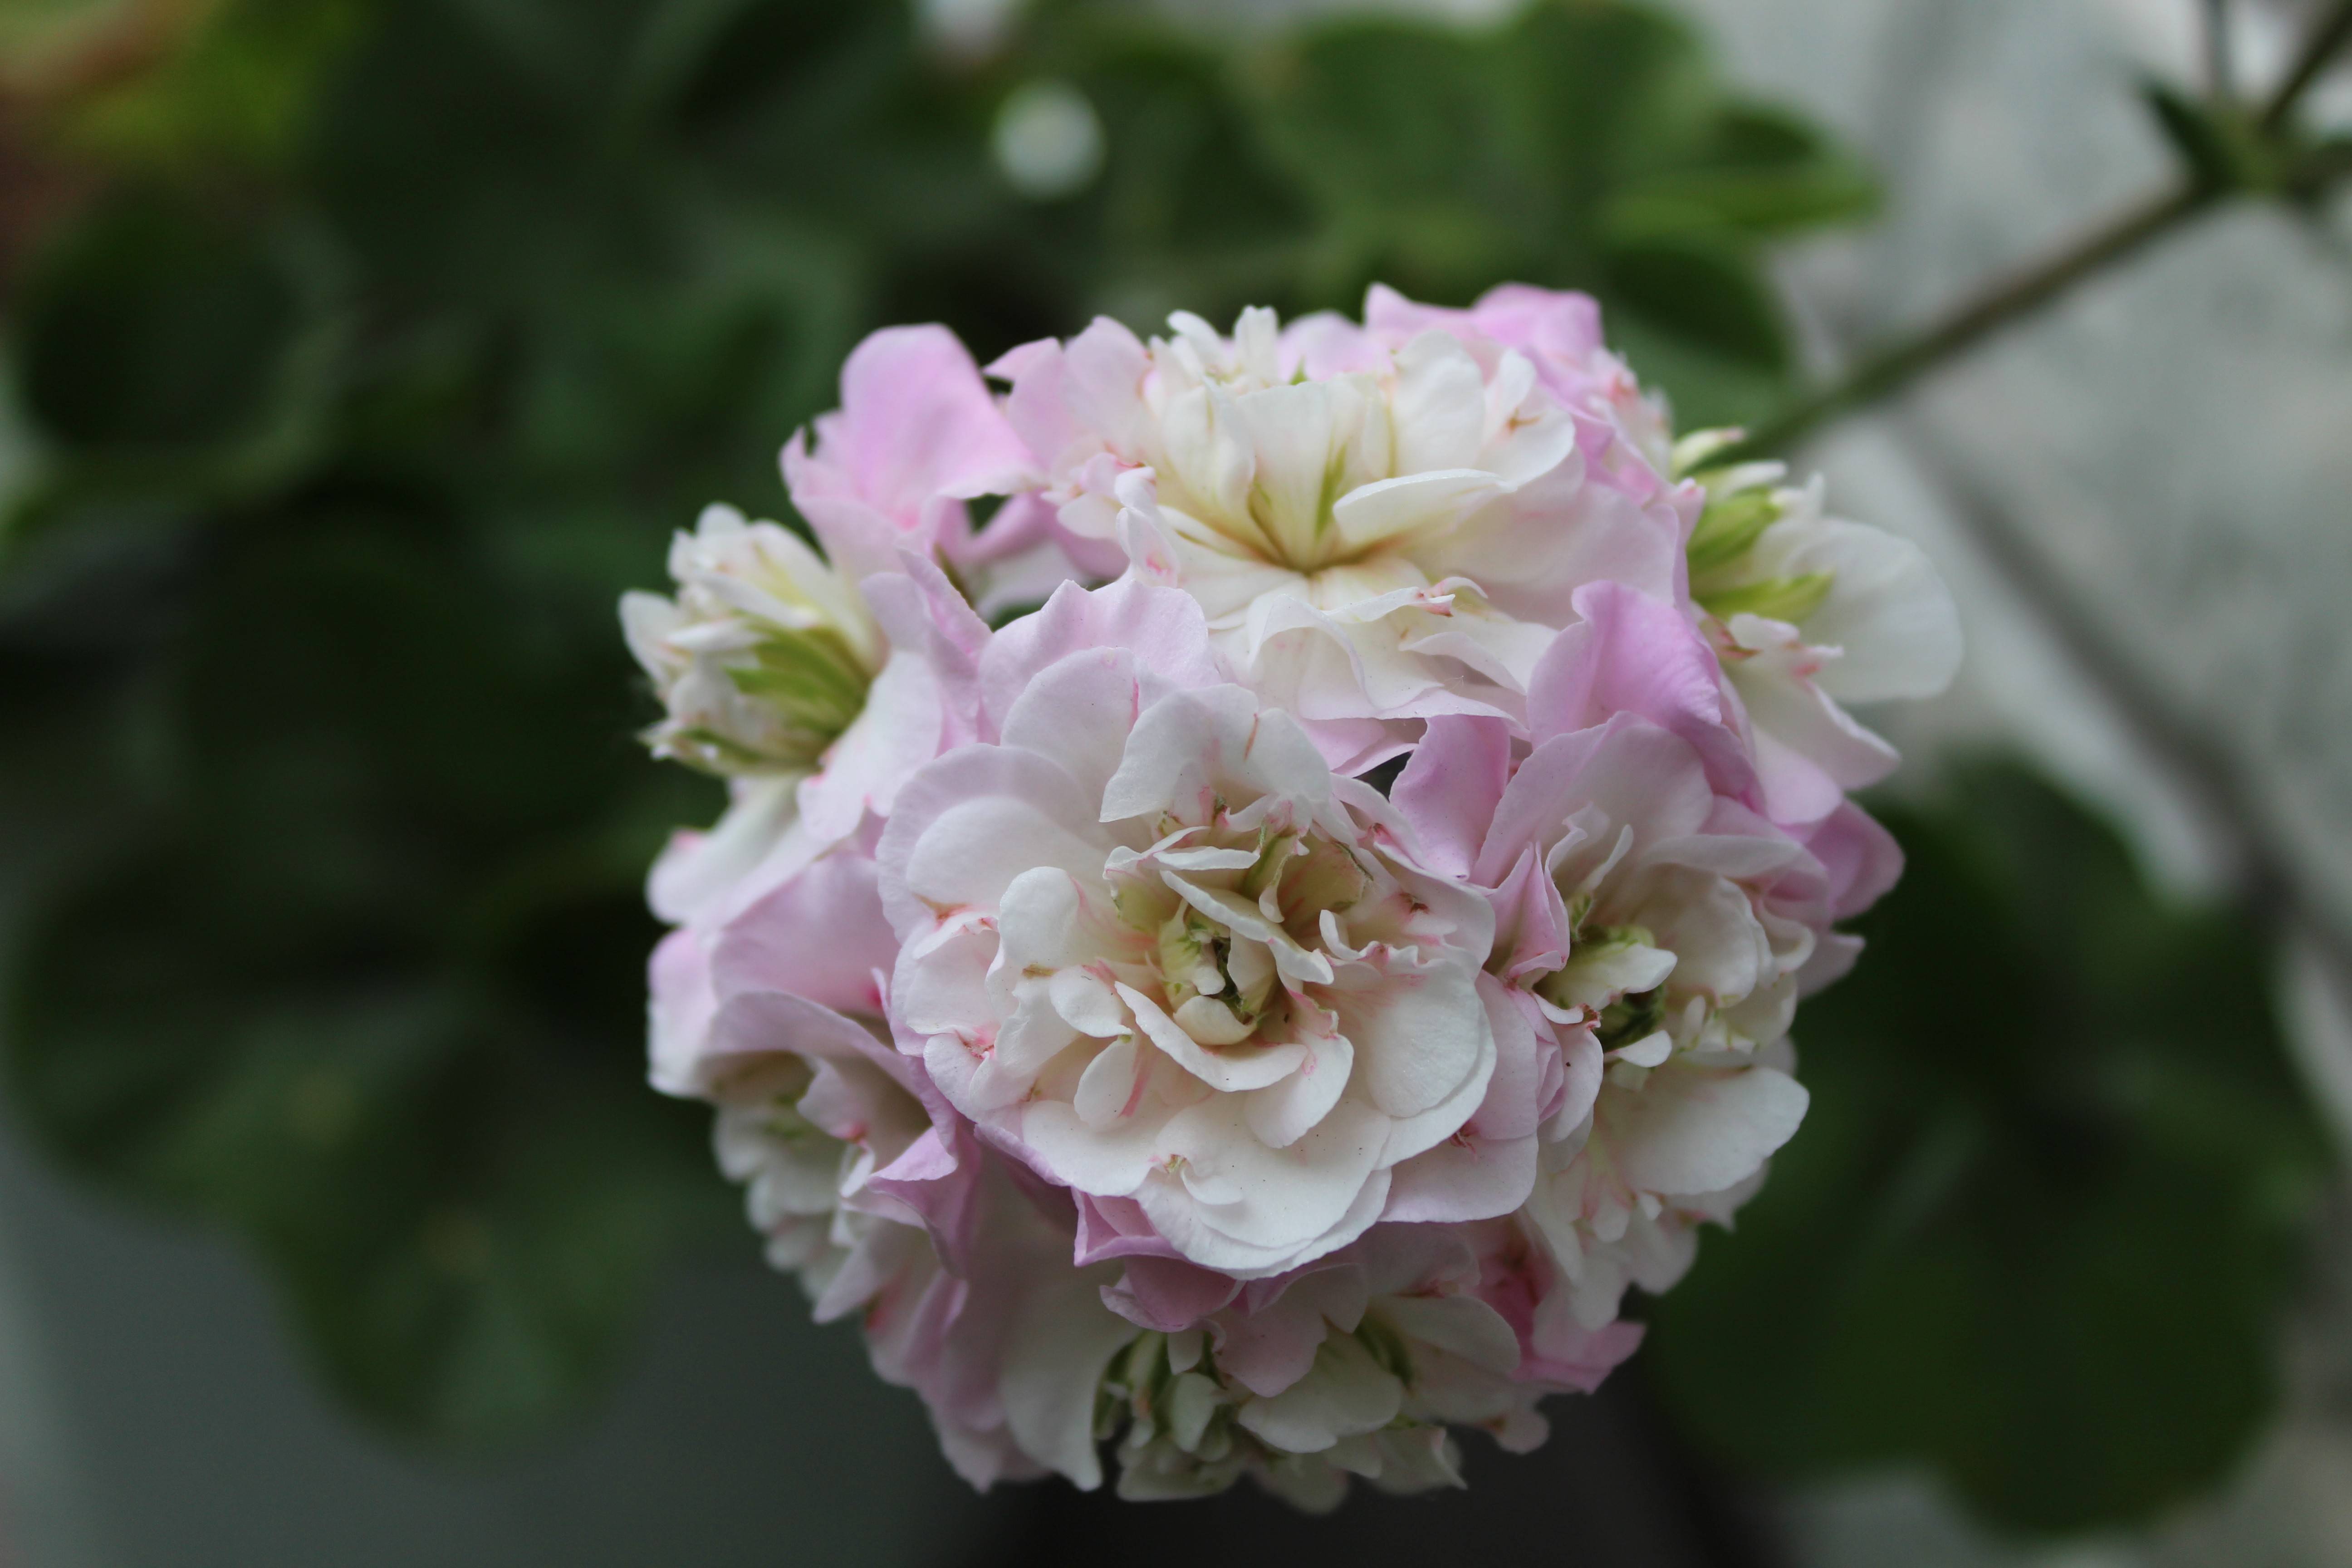 Описание сорта пеларгонии пак вива розита: как выращивать и ухаживать за цветком